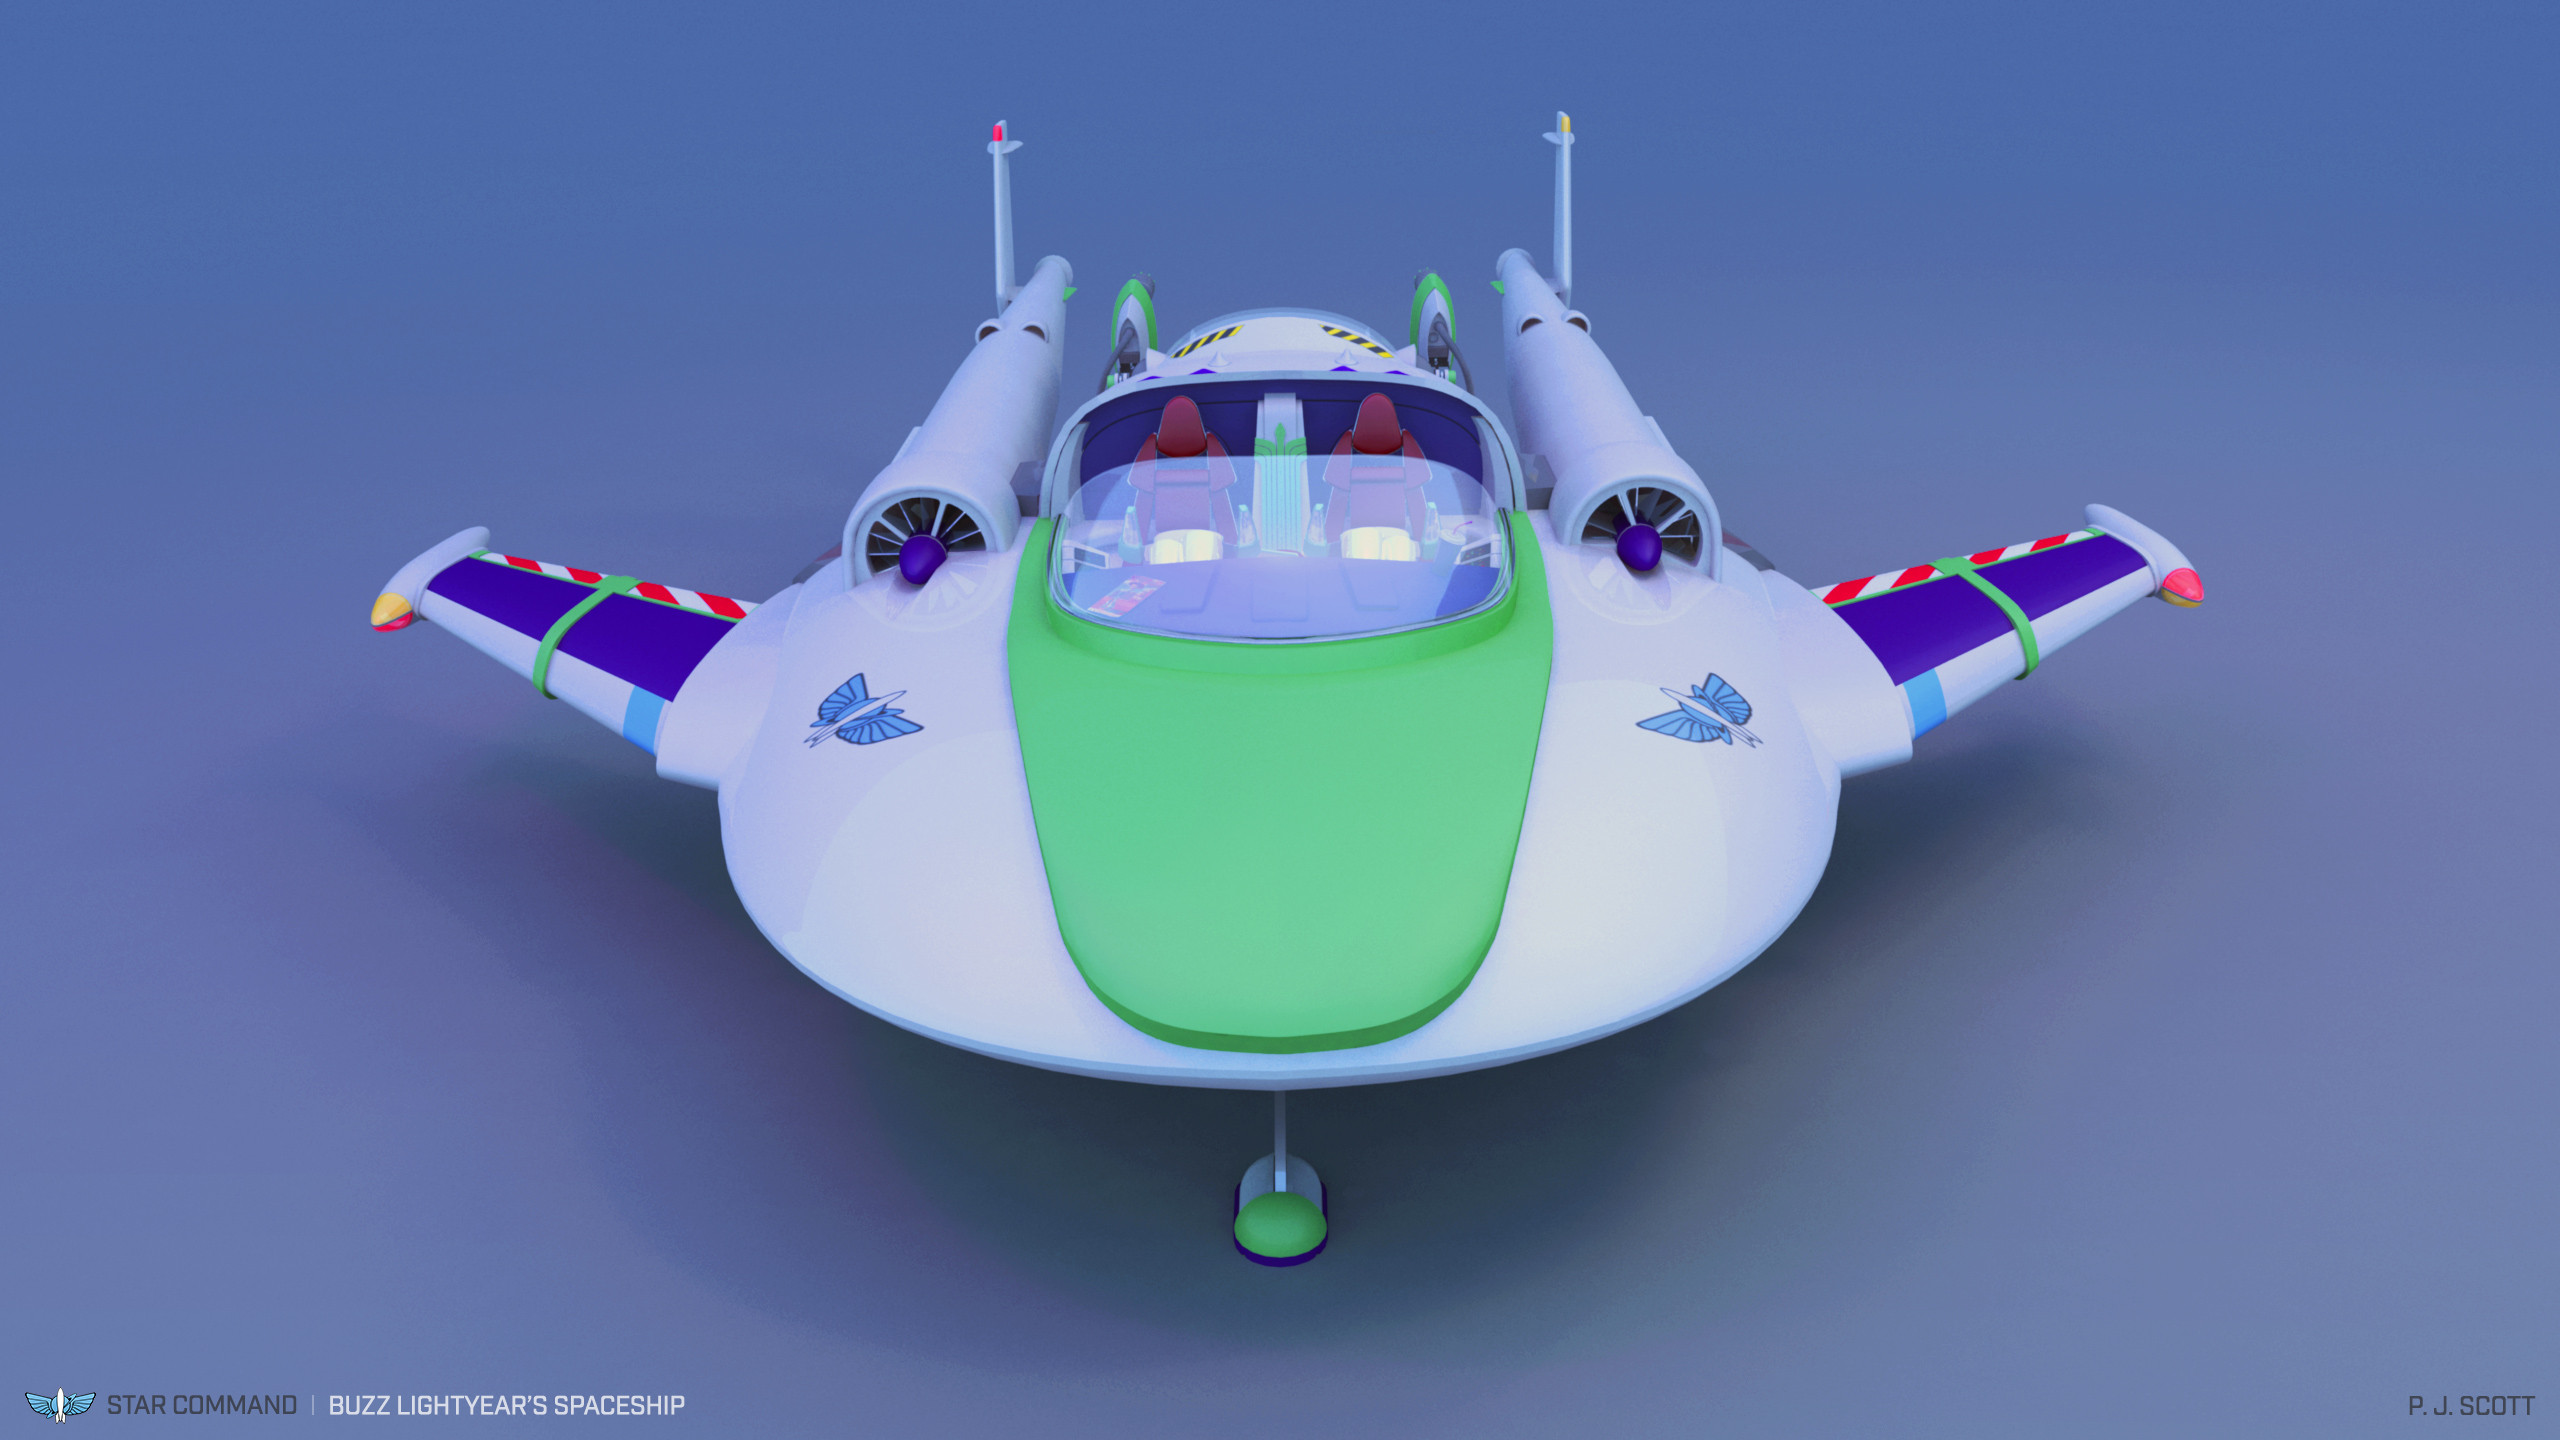 Buzz Lightyear's Spaceship, Peter Scott